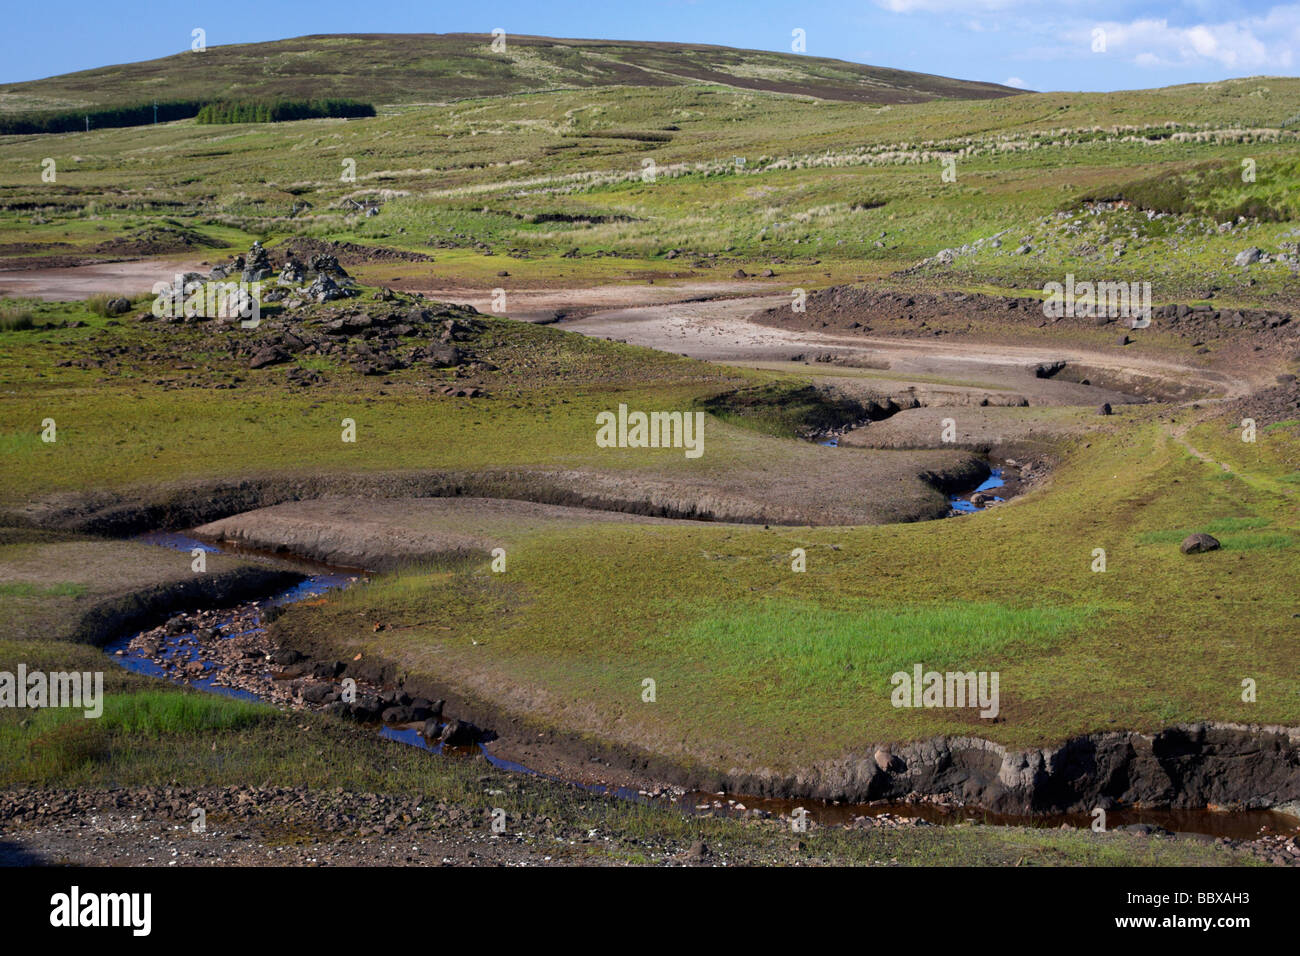 Loughareema vanishing Lake County Antrim Irlanda del Nord Regno Unito il lago scarica in una dolina Foto Stock